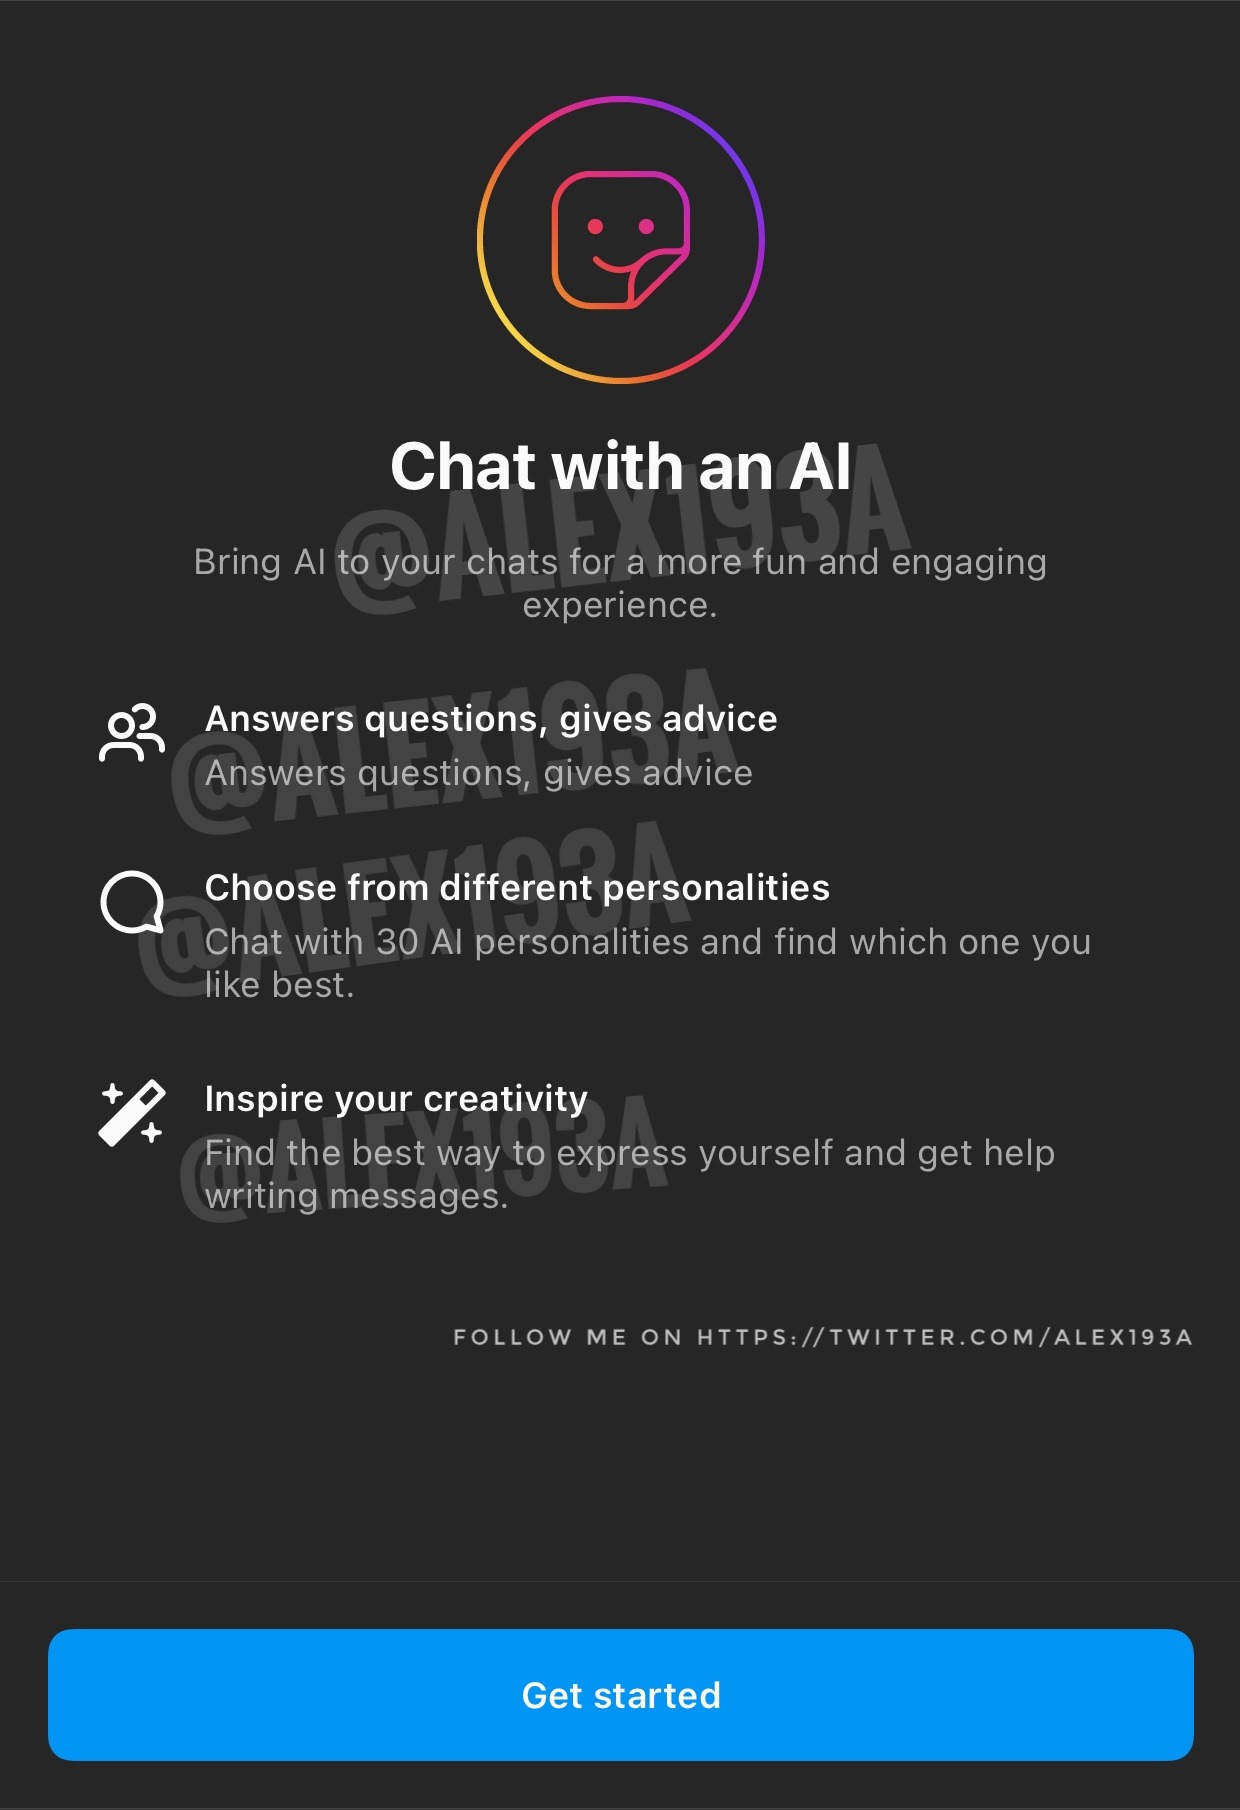 Instagram estaría desarrollando una función para incluir chatbots en las conversaciones. (Twitter/@alex193a)